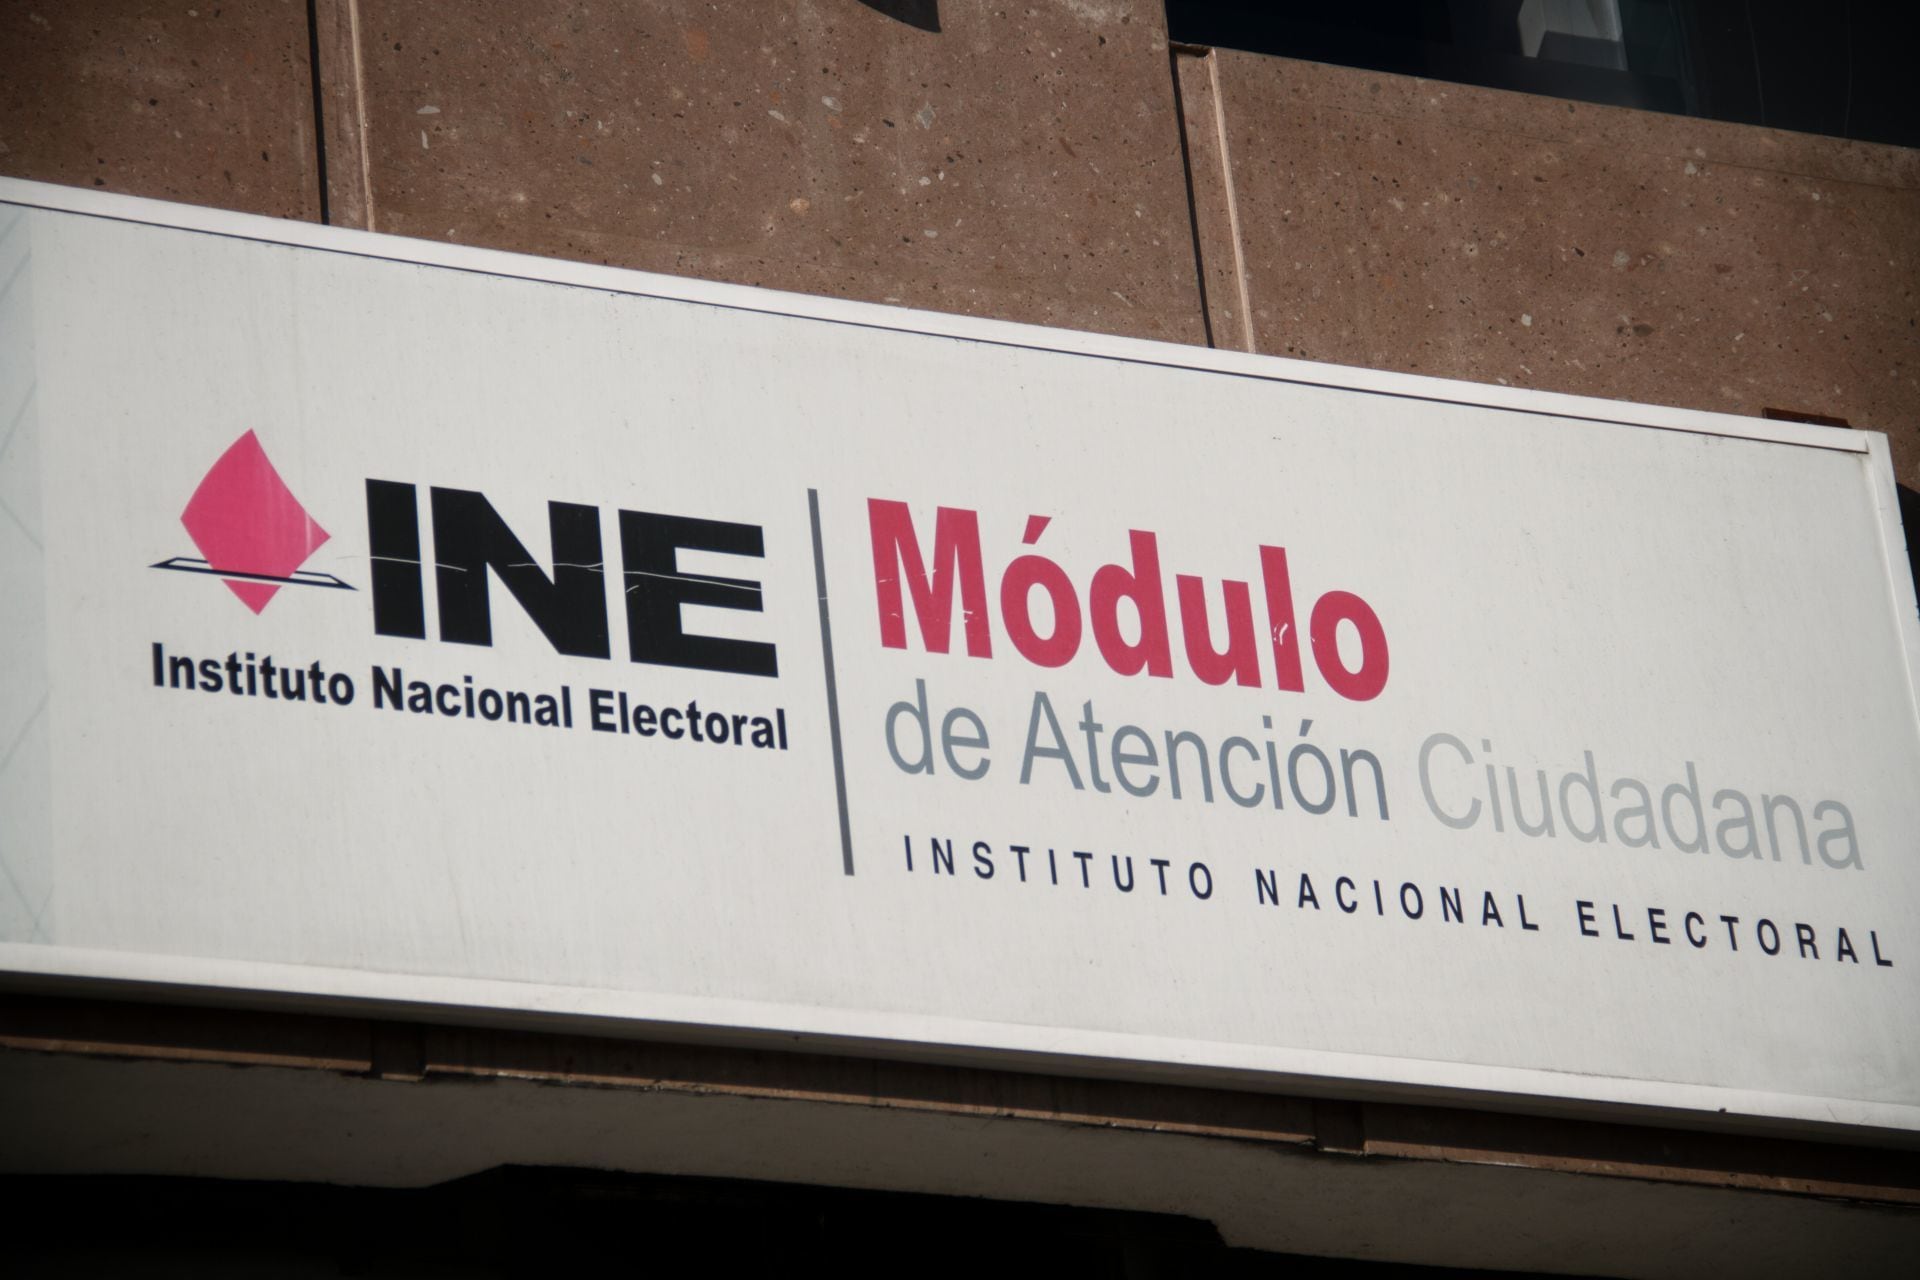 Actualmente la credencial del INE es la principal identificación oficial en México. FOTO: ANDREA MURCIA /CUARTOSCURO.COM